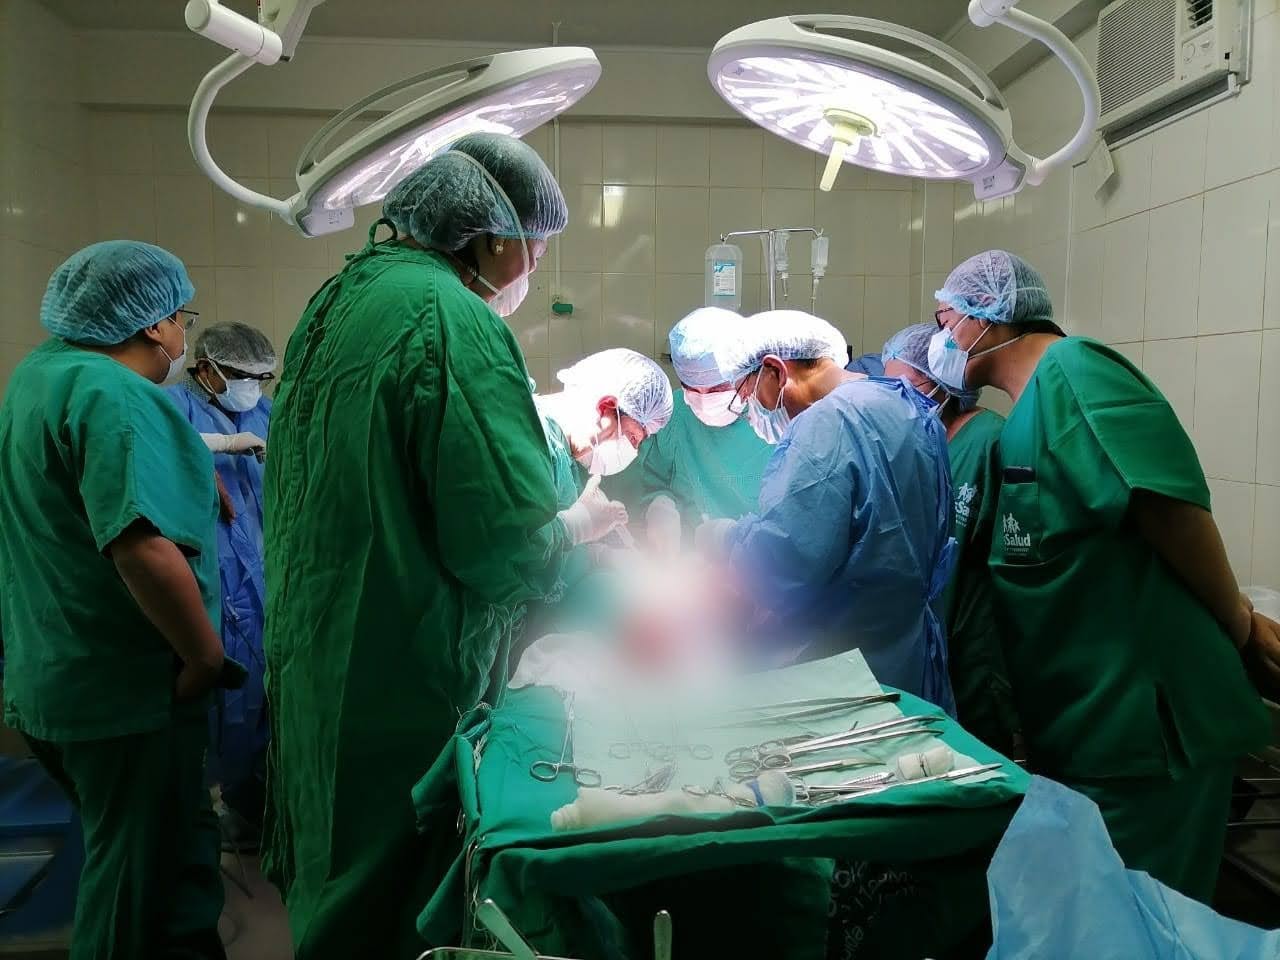 Essalud - Médicos de EsSalud Puno salvan vida de un paciente, tras compleja intervención quirúrgica